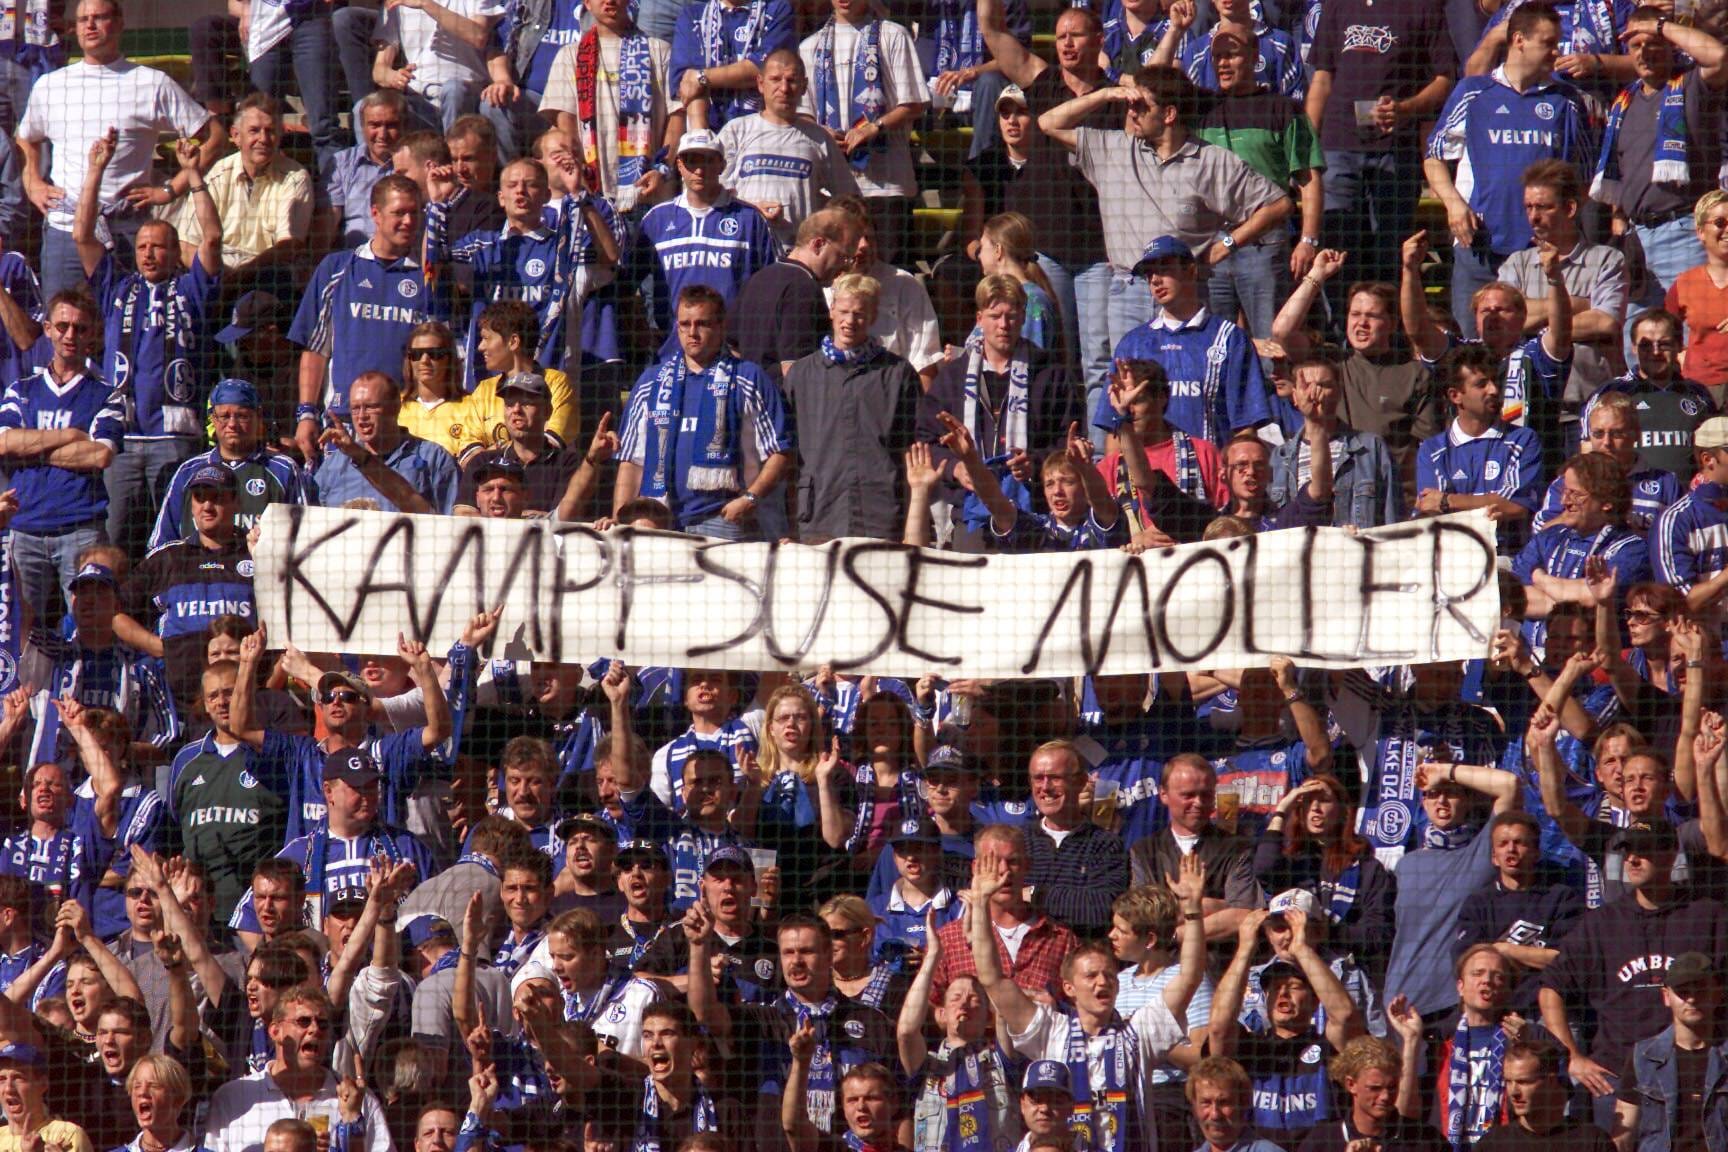 Das Jahr 2000: Andreas Möller wechselt von Dortmund nach Gelsenkirchen. Der Schalke-Anhang grüßt die "Kampfsuse" vor dem Derby gegen die Borussia. Schalke gewinnt am Ende dank eines überragenden Möllers mit 4:0 beim BVB.